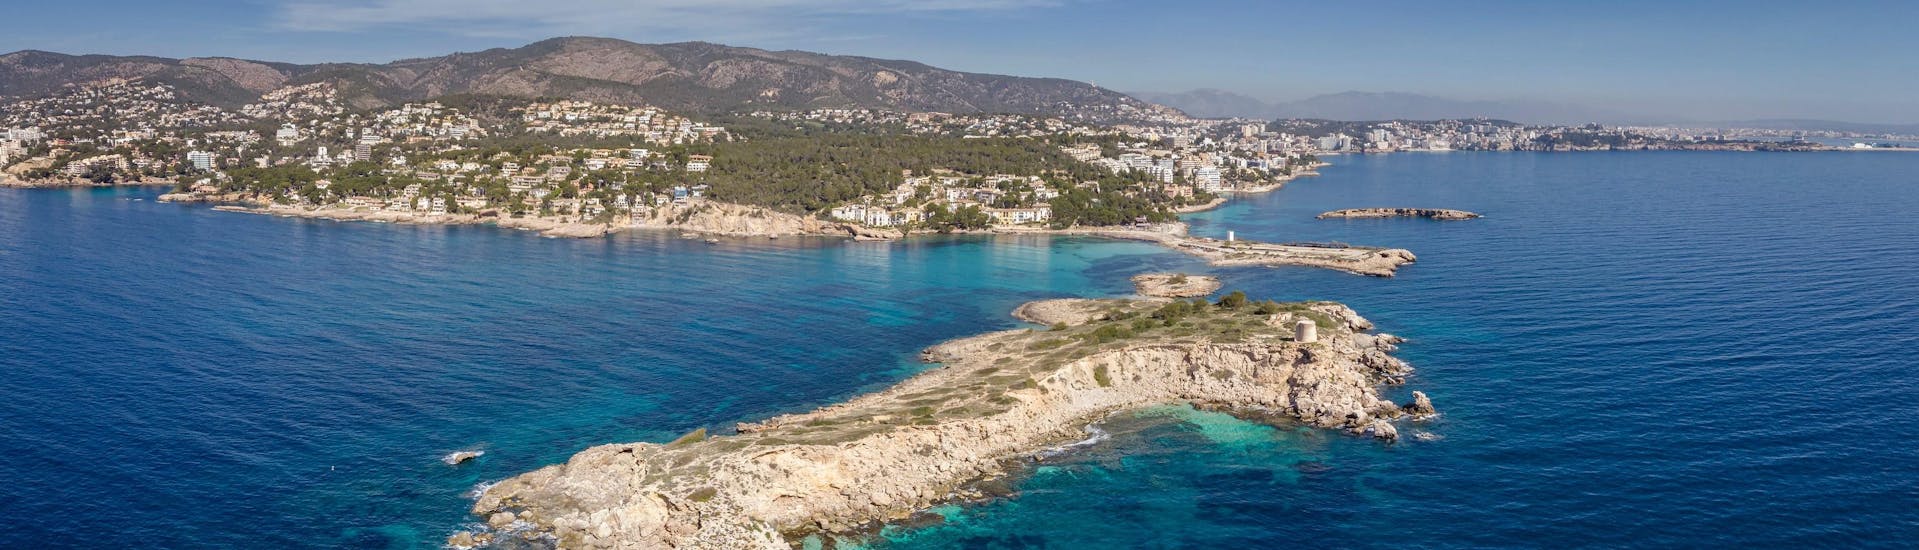 Uitzicht op het prachtige strand van Illetes, dat u kunt ontdekken tijdens een boottocht vanuit Palma de Mallorca.